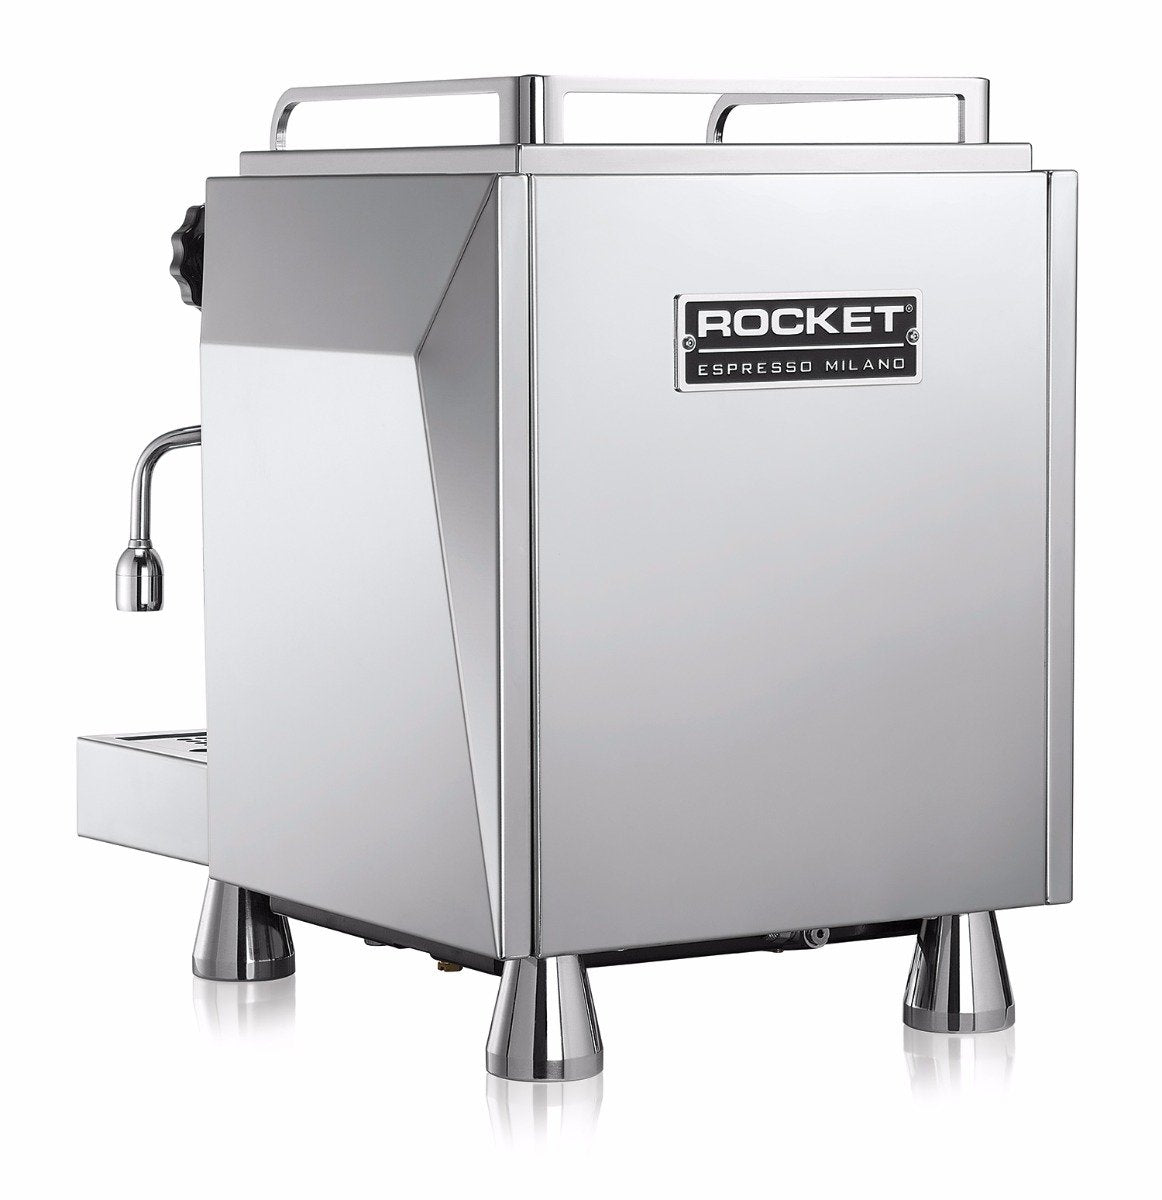 Rocket Espresso Giotto Cronometro R Espresso Machine